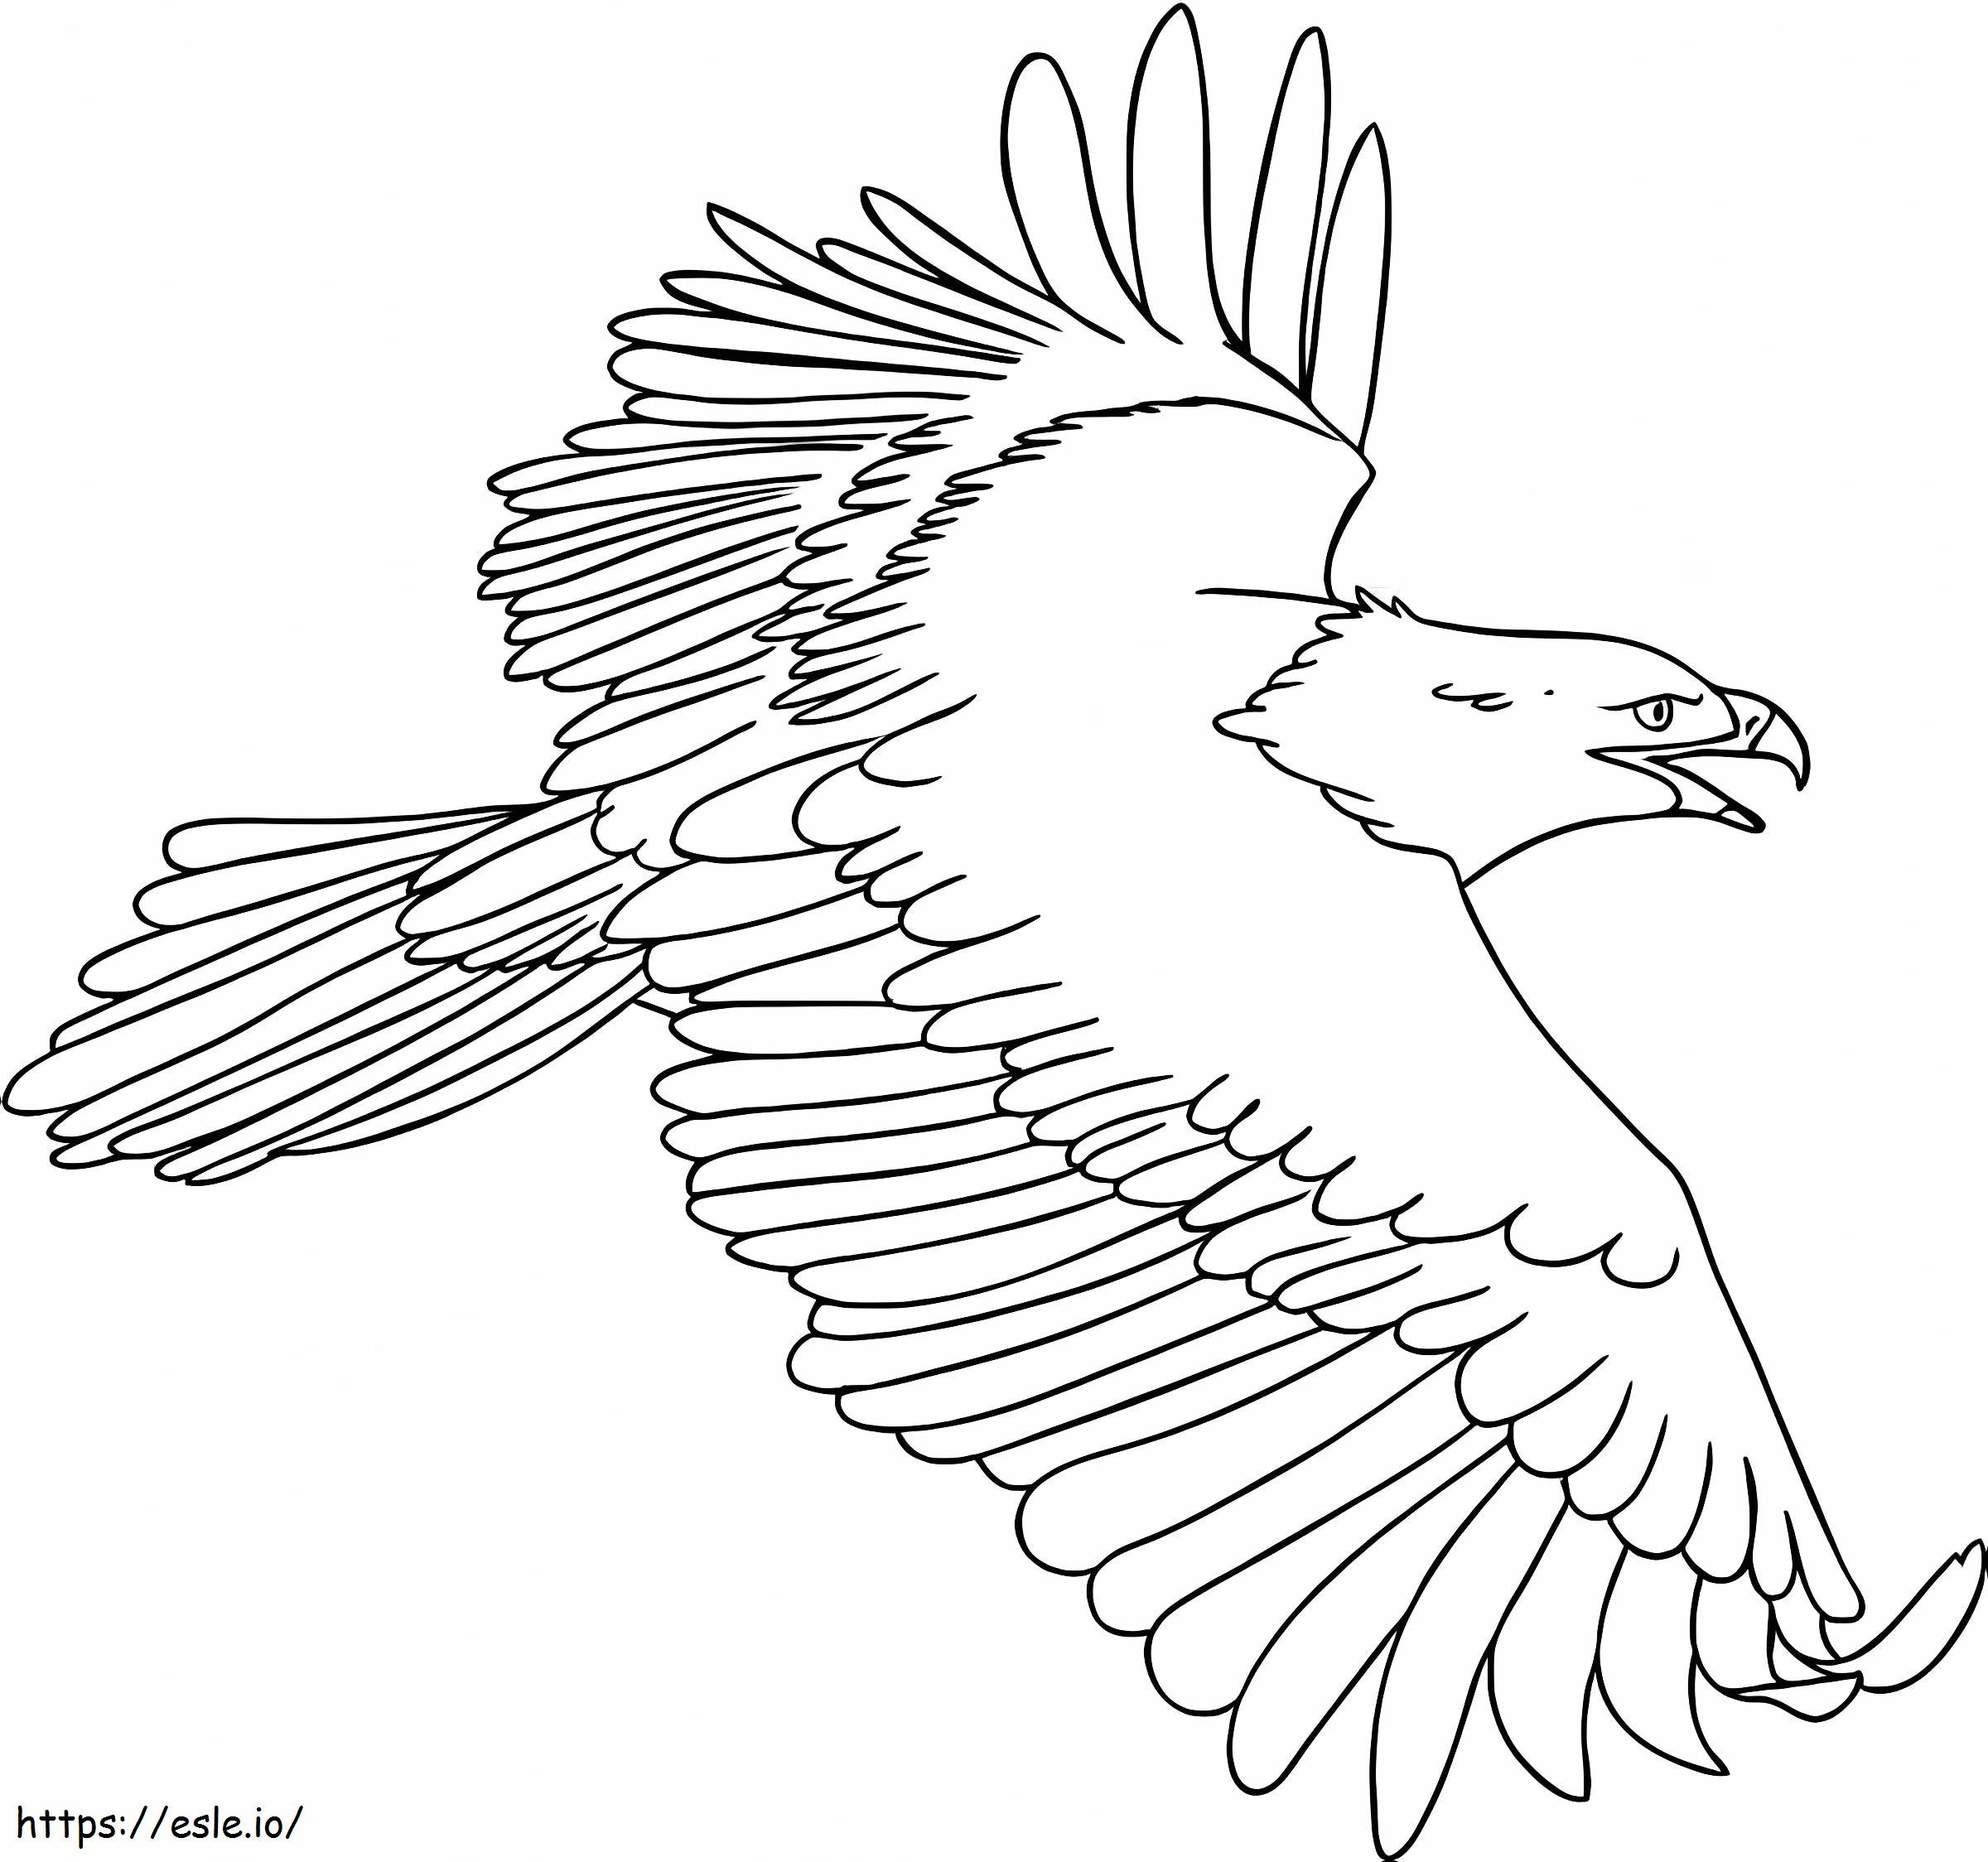 Happy Eagle coloring page